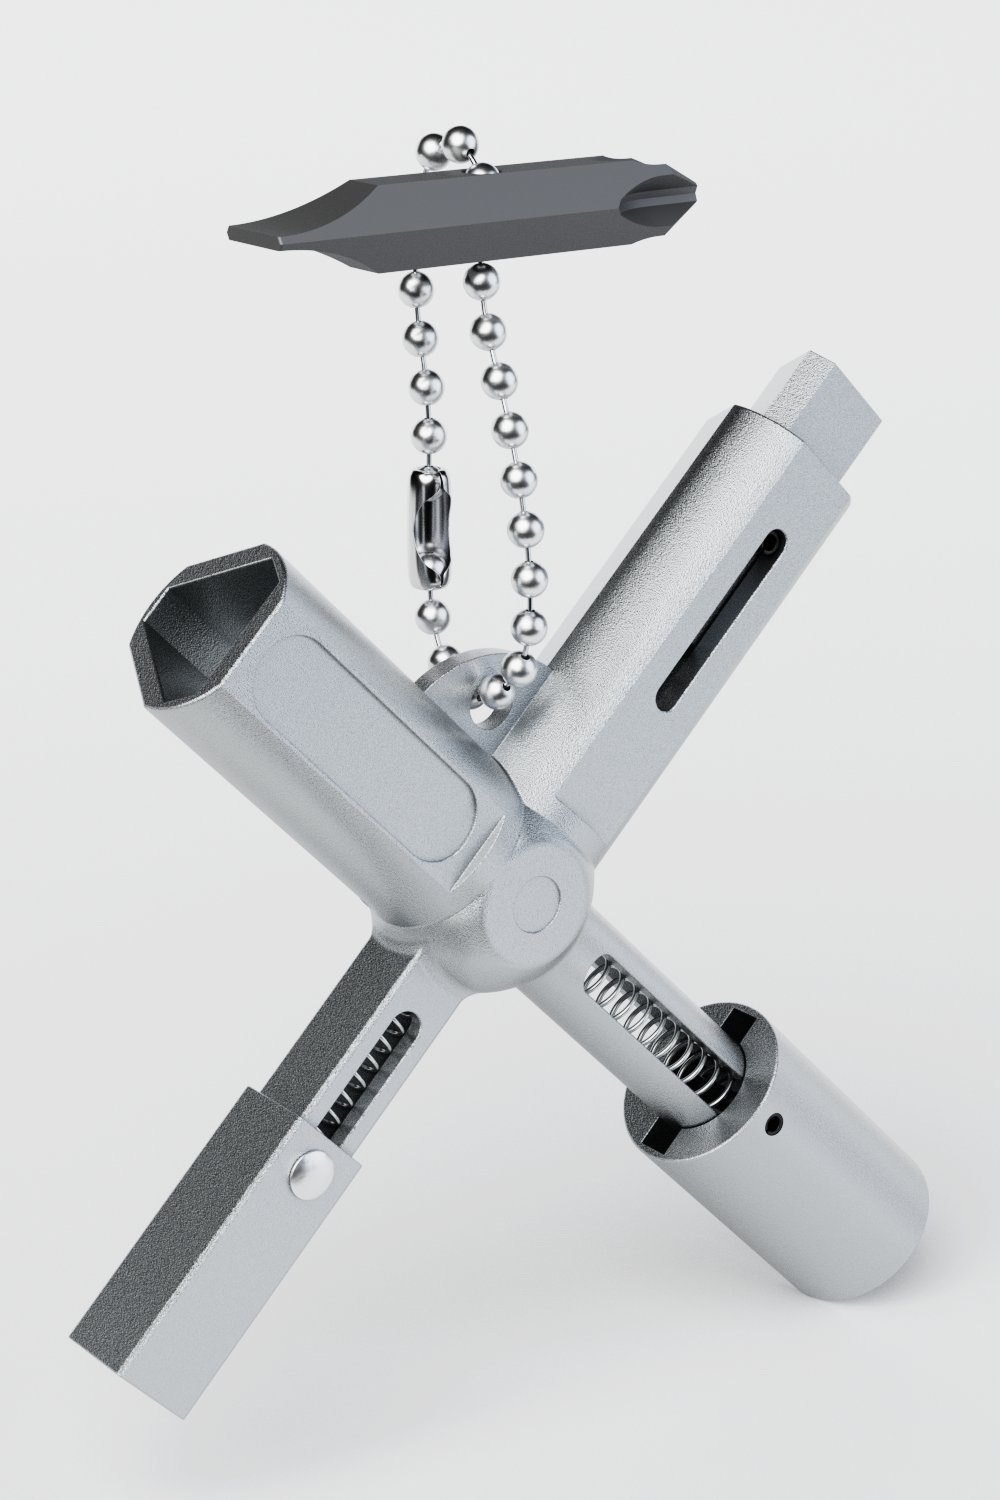 ABSINA Werkzeug Universalschlüssel mit 6 Profile - Dreikantschlüssel  Vierkantschlüssel Schaltschrankschlüssel Vierkant Dreikant Bauschlüssel -  Universal Schlüssel für gängige Schränke & Absperrsysteme, (1-St)